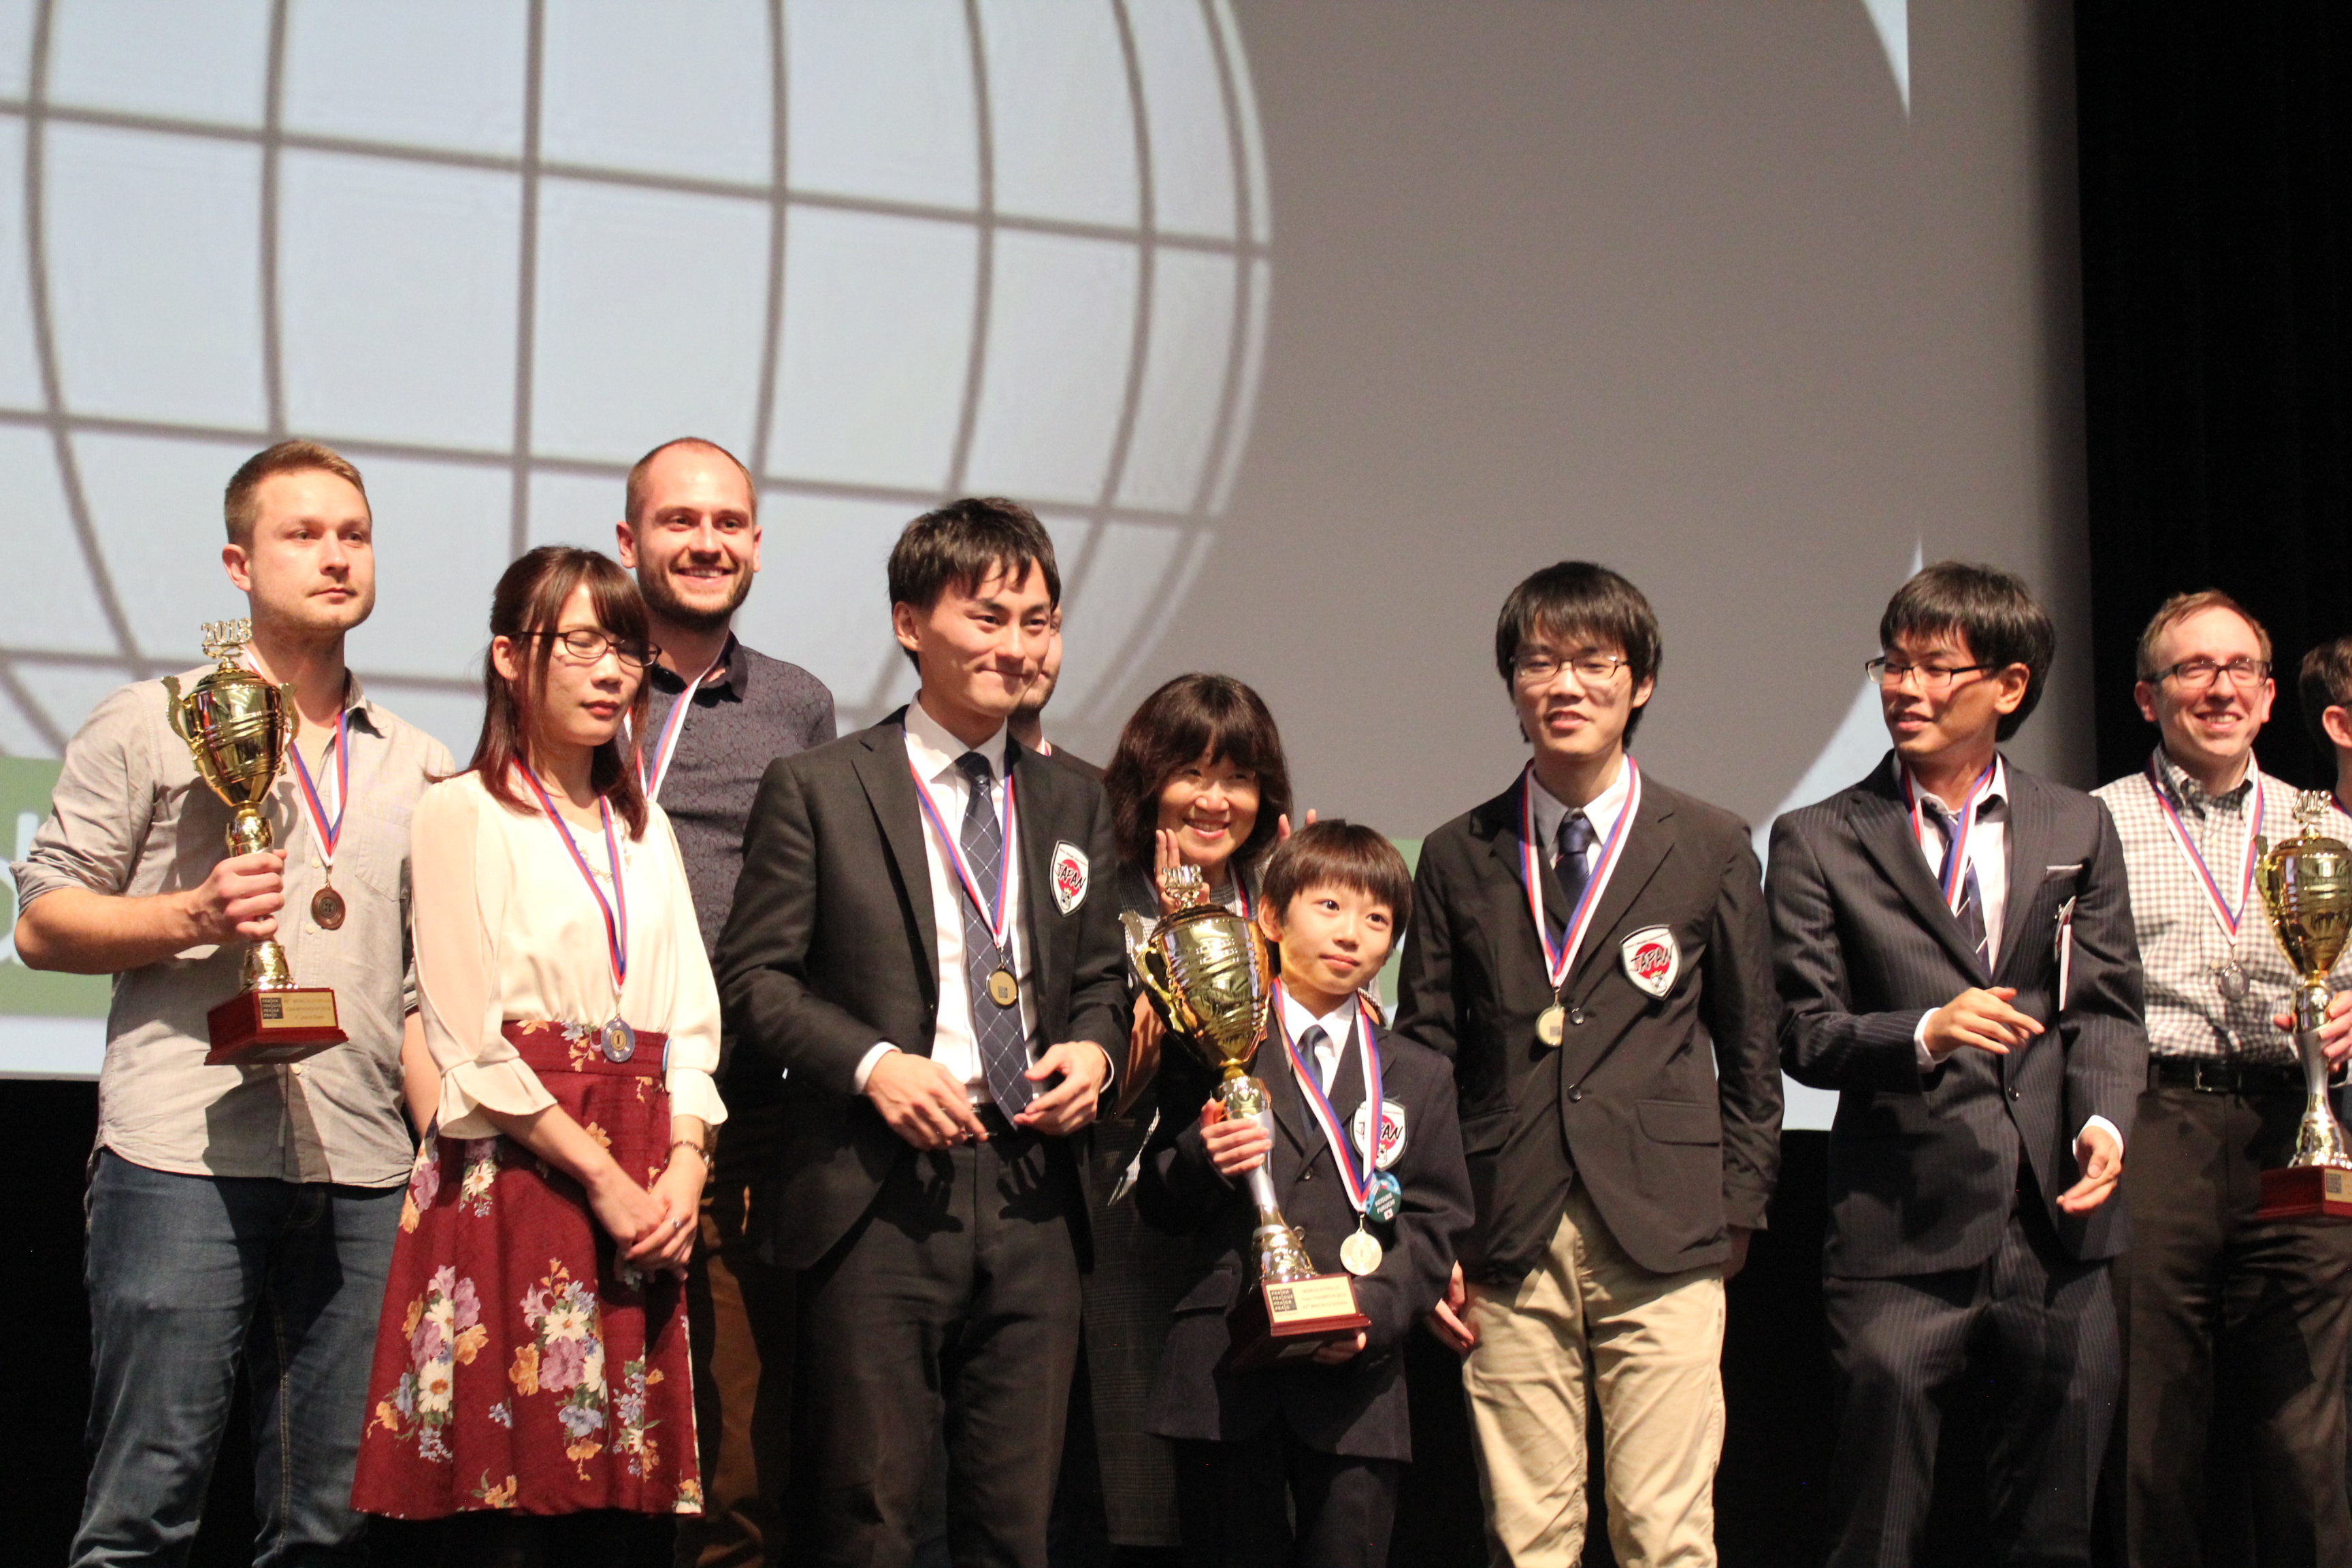 Keisuke Fukuchi. 11 letni (!) Mistrz Świata Othello w otoczeniu reszty medalistów.